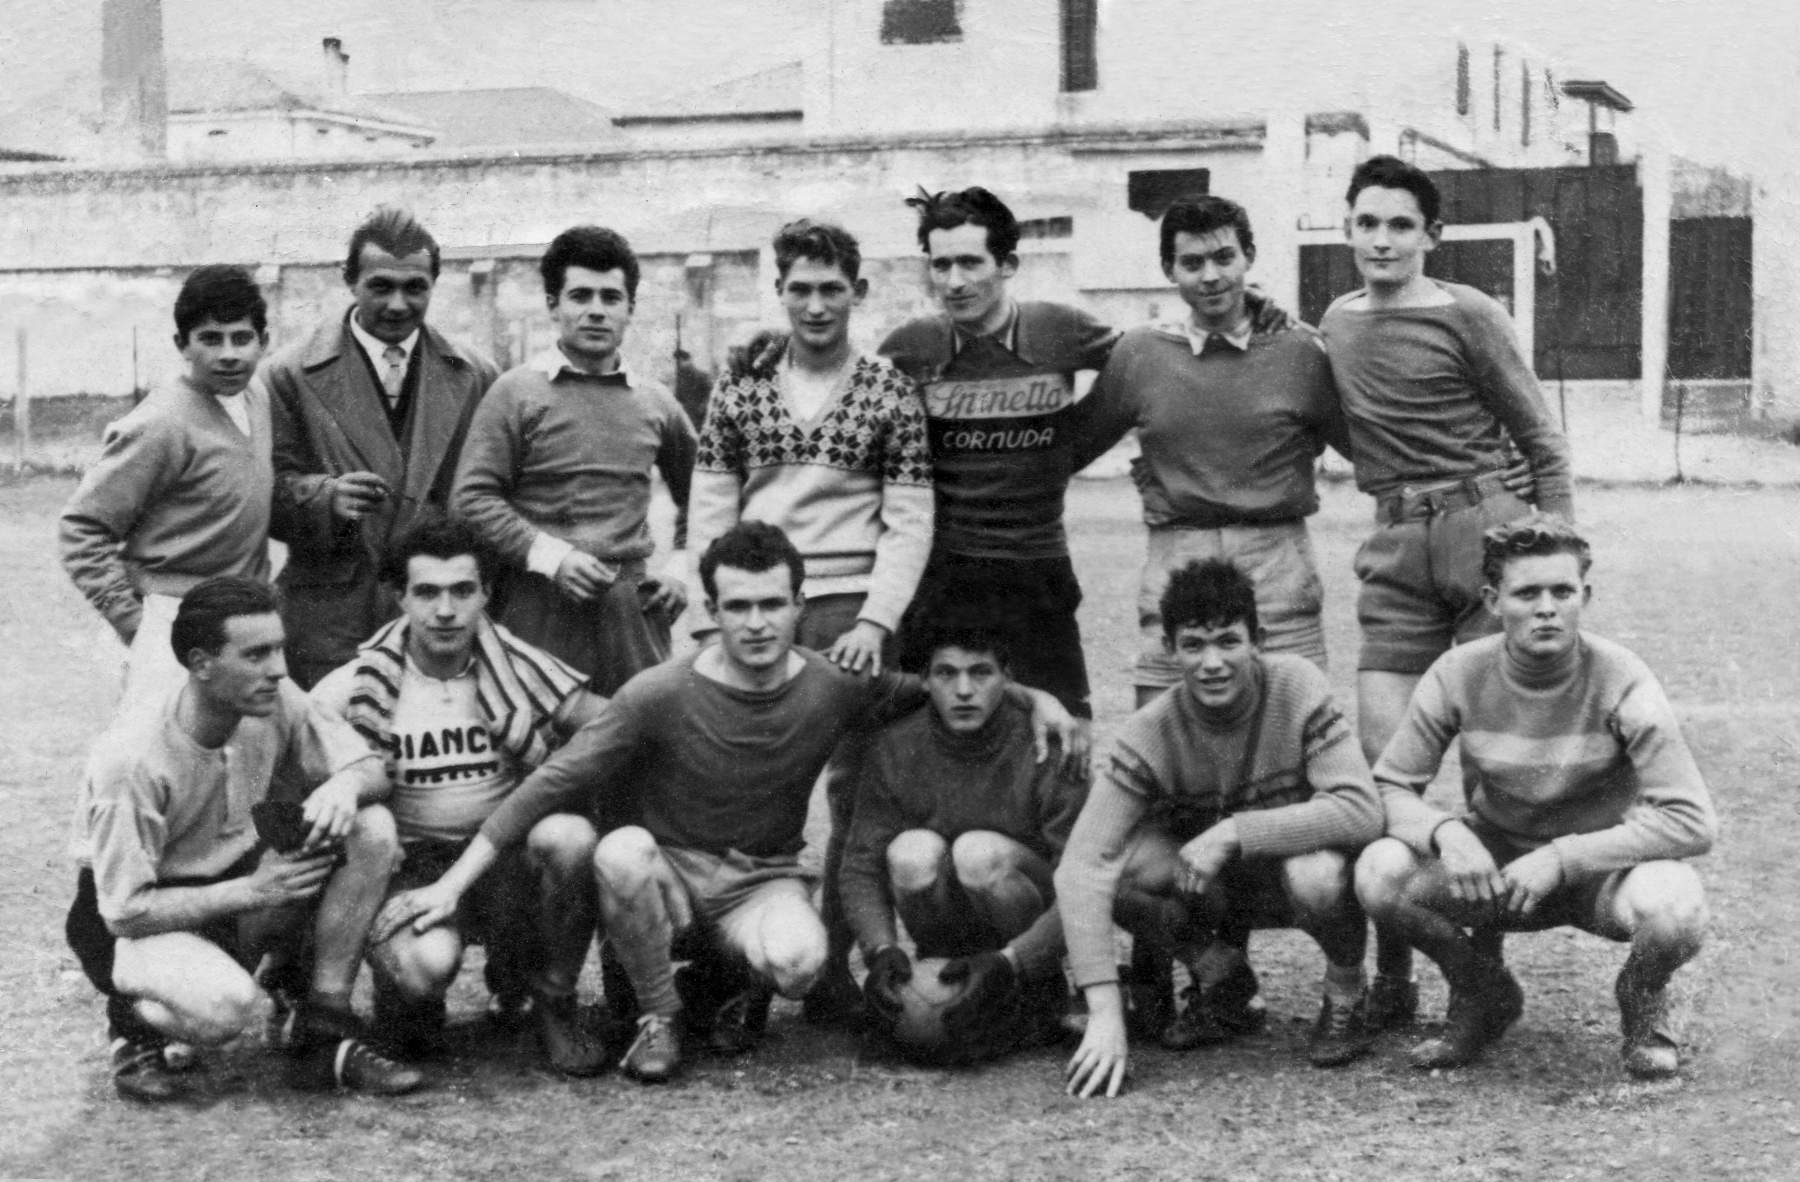 Squadra calcio 1956. Remo Cervi, Giacon Giuseppe, Poloni Stanislao, Nino Gemin, Garbuio Renzo, Silvio Mazzoccato e altri non riconosciuti.